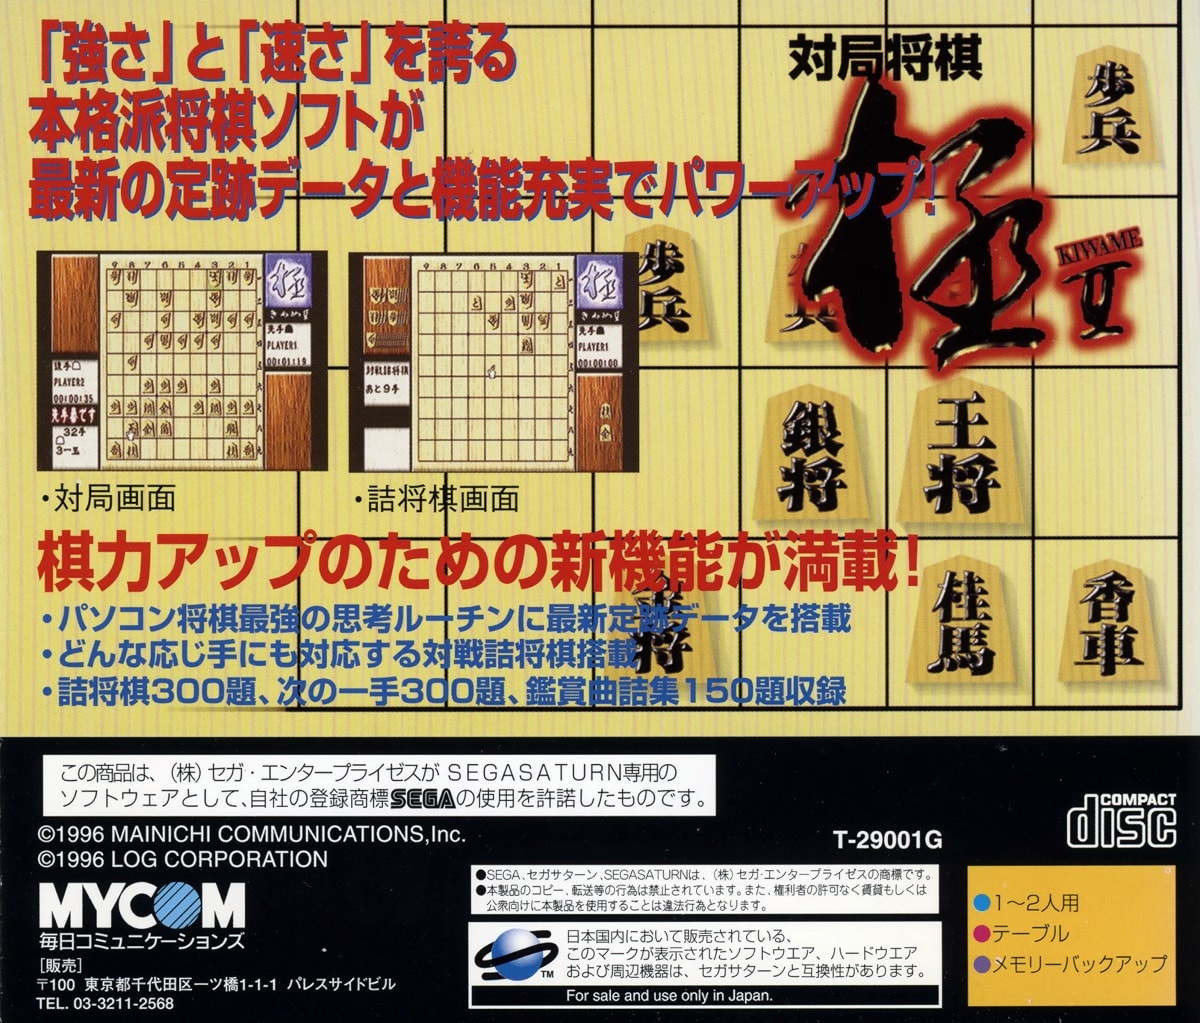 Capa do jogo Taikyoku Shougi Kiwame II